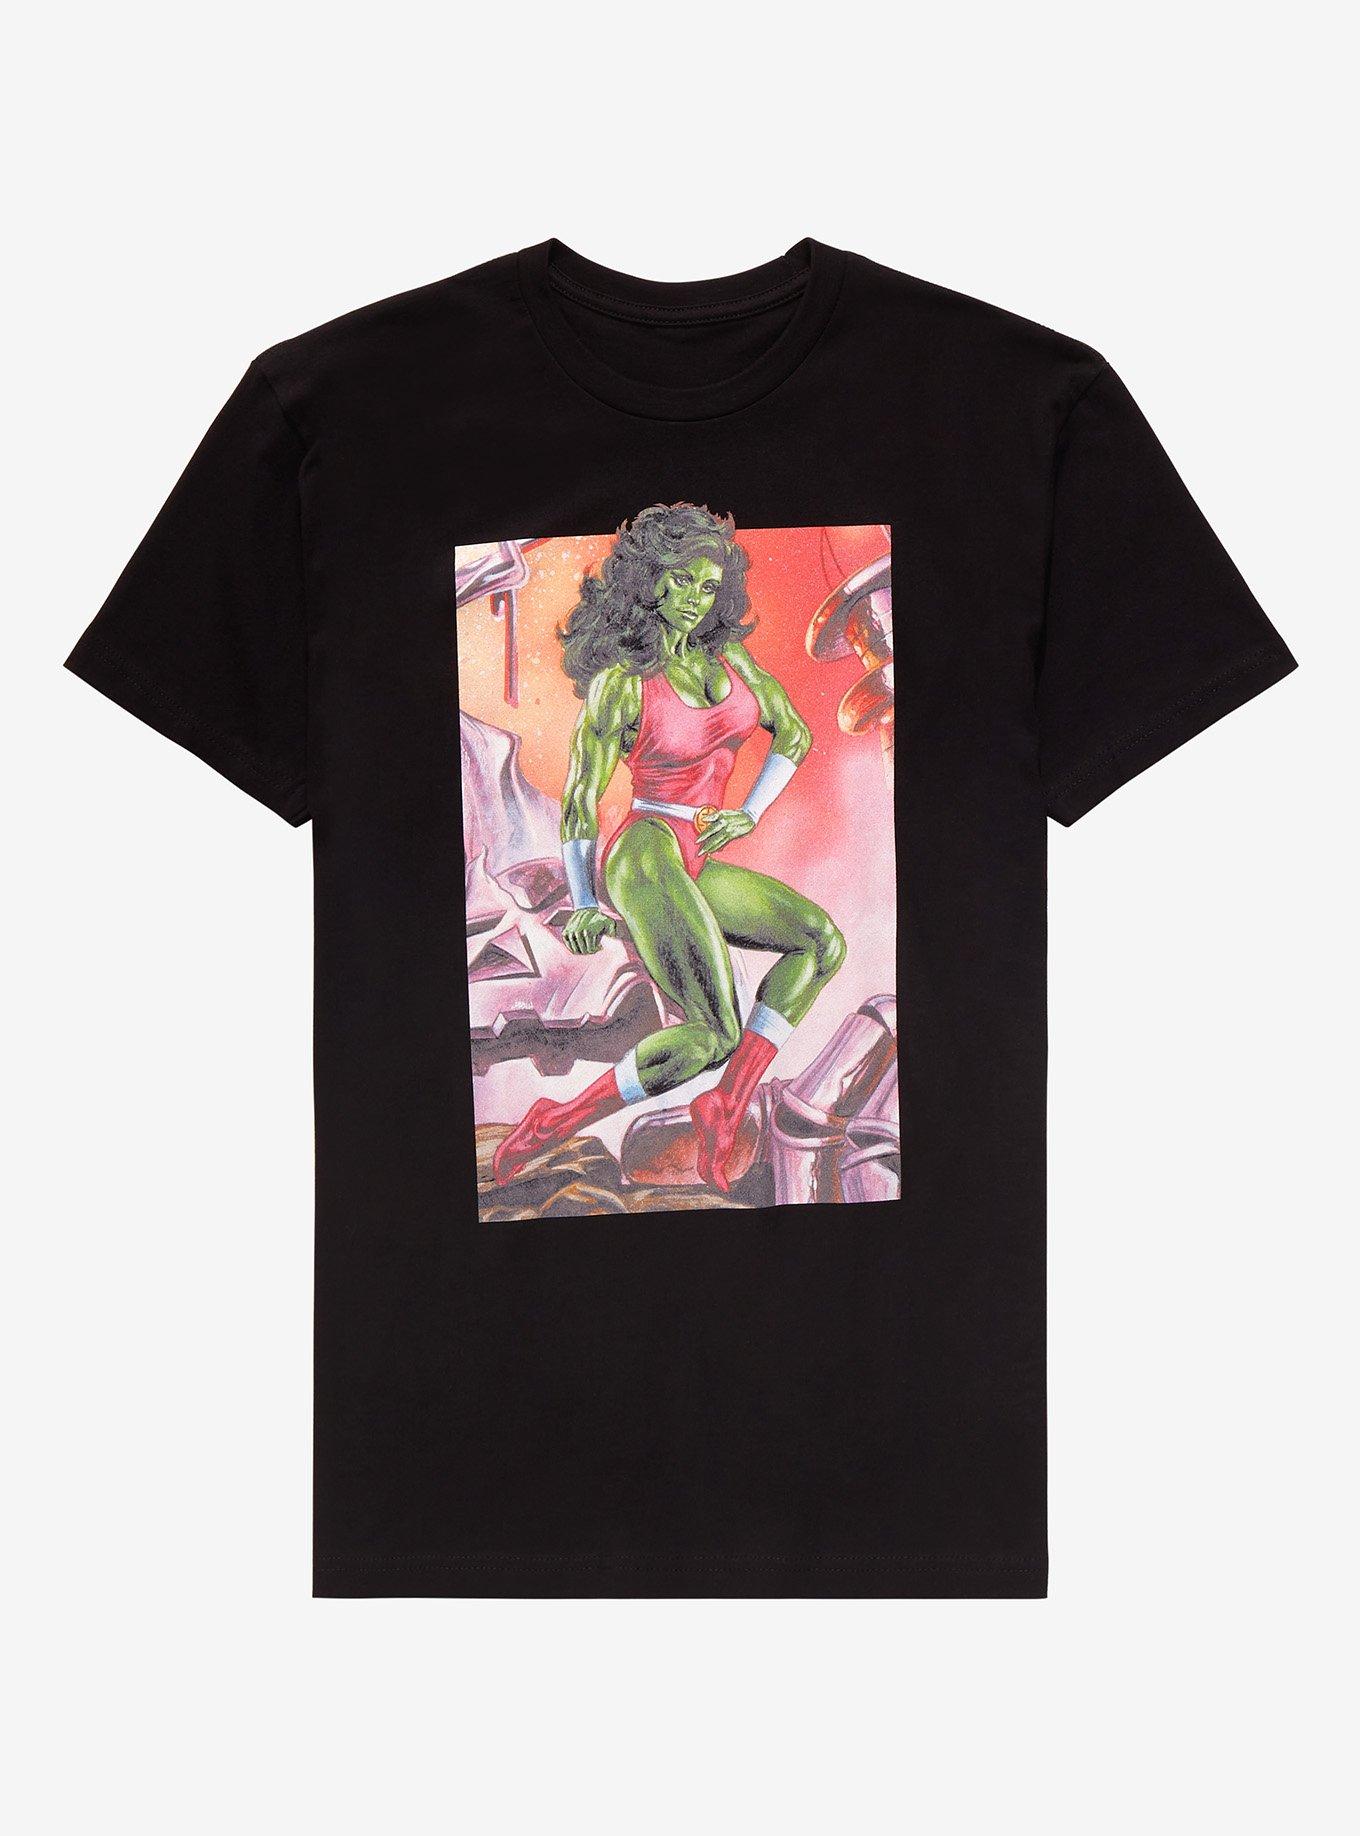 Marvel She-Hulk T-Shirt By Joe Jusko, BLACK, hi-res